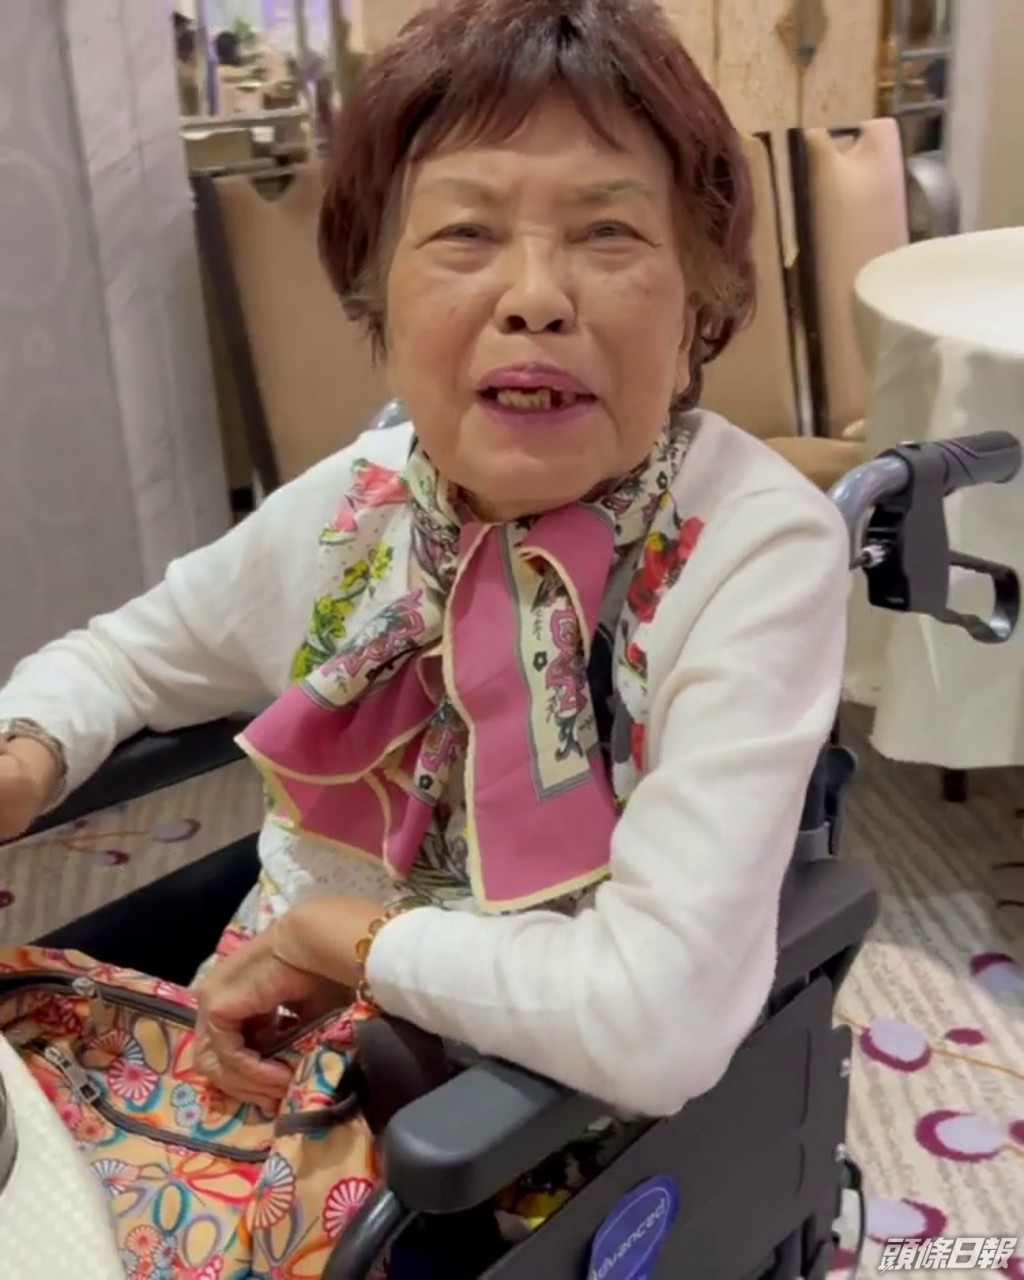 余慕蓮患病期間曾以輪椅代步。